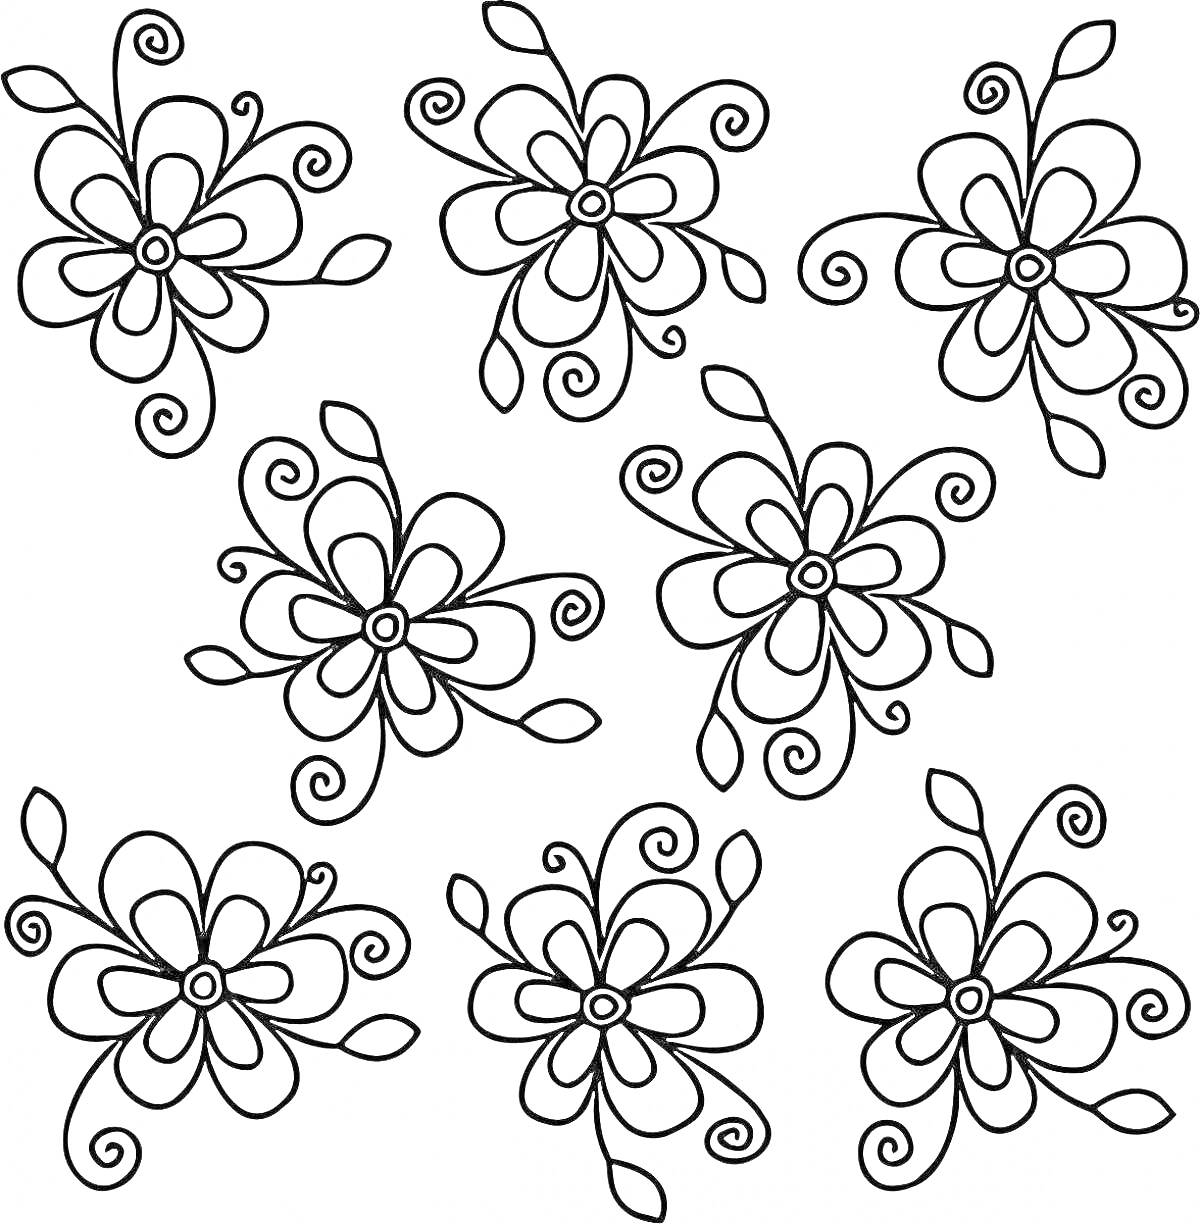 Раскраска Множество маленьких цветочков с лепестками и завитками